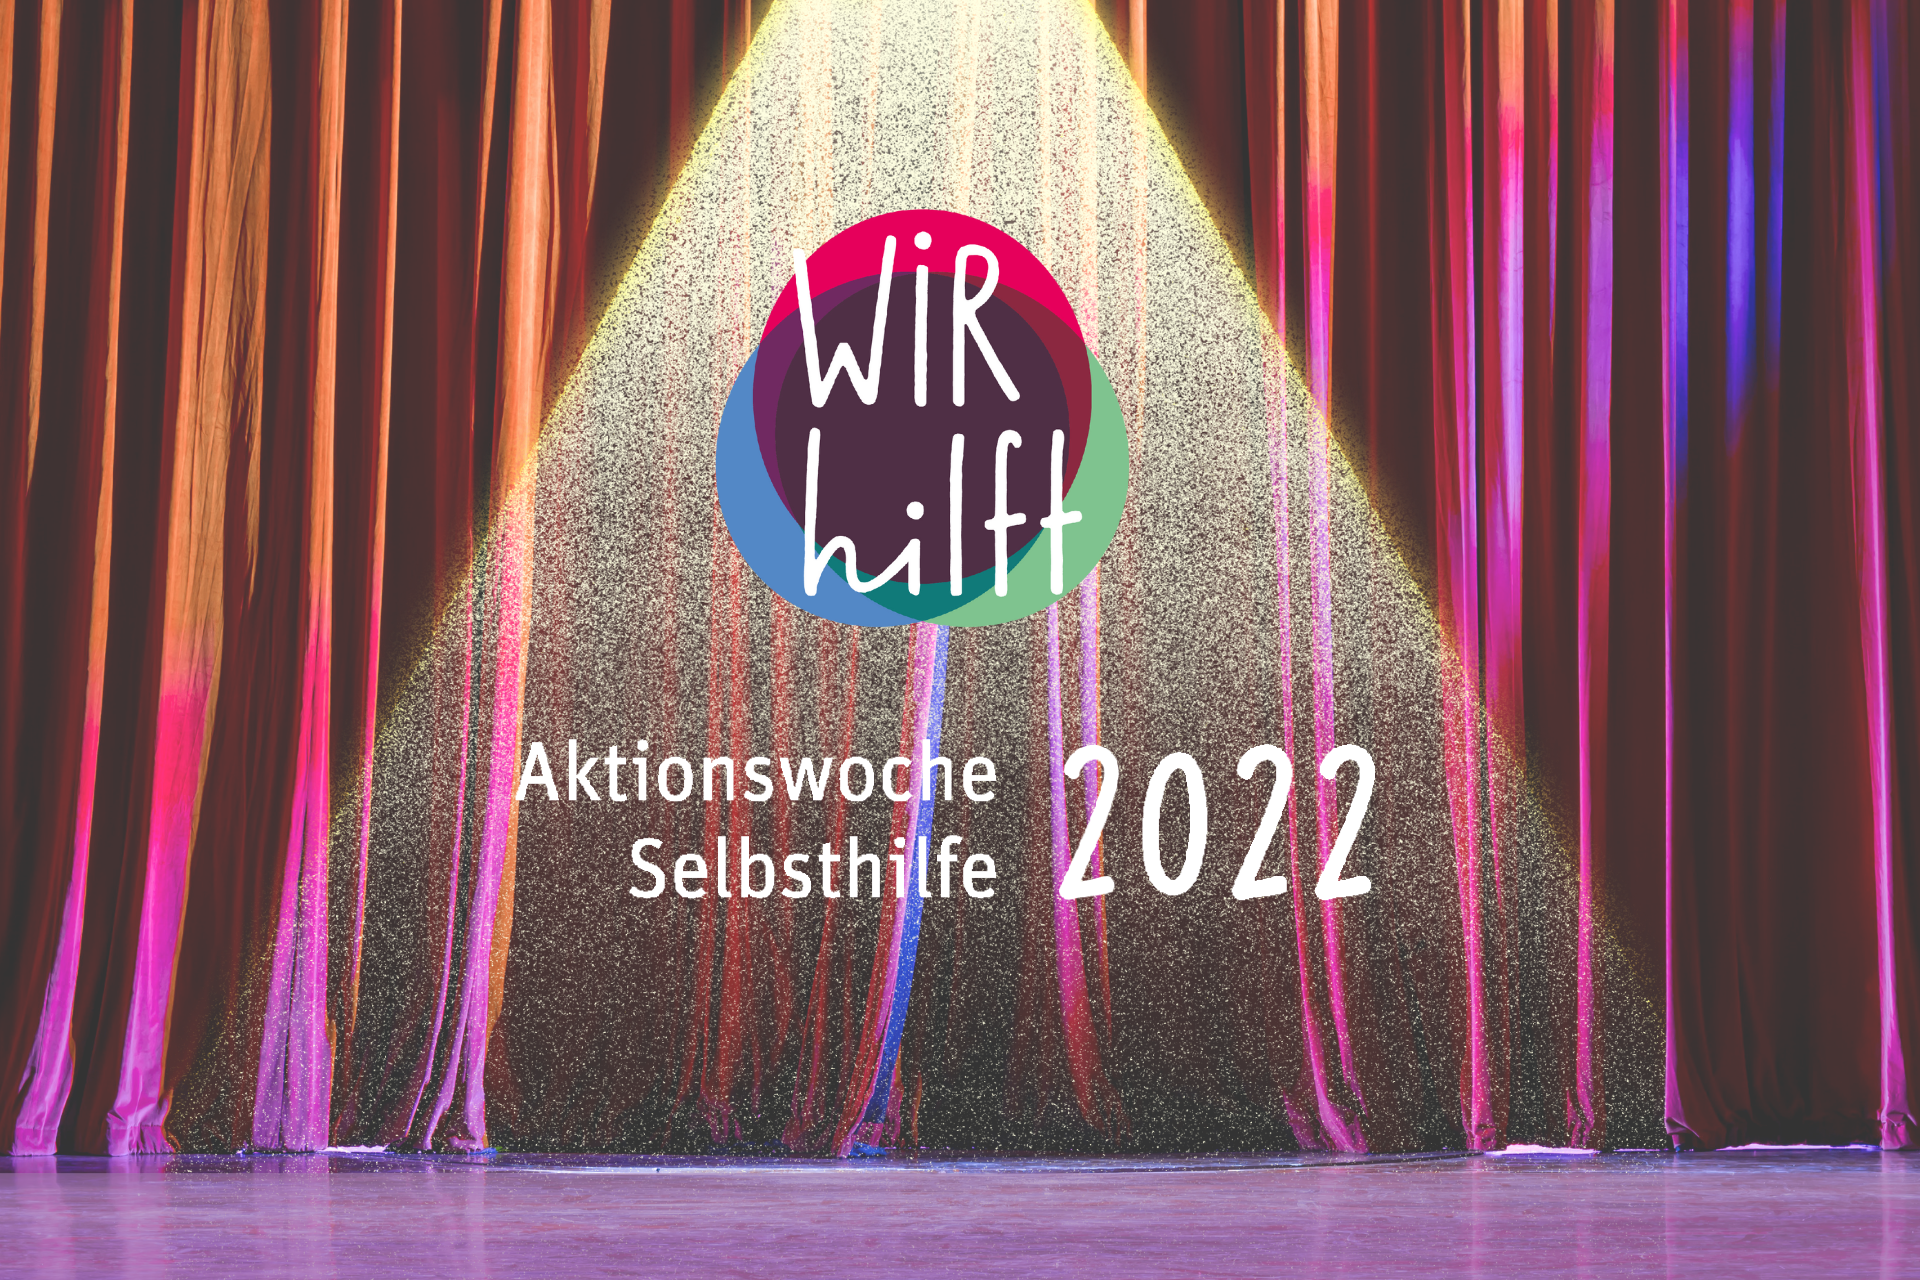 Bühnenvorhang mit Logo zur Aktionswoche Selbsthilfe 2022